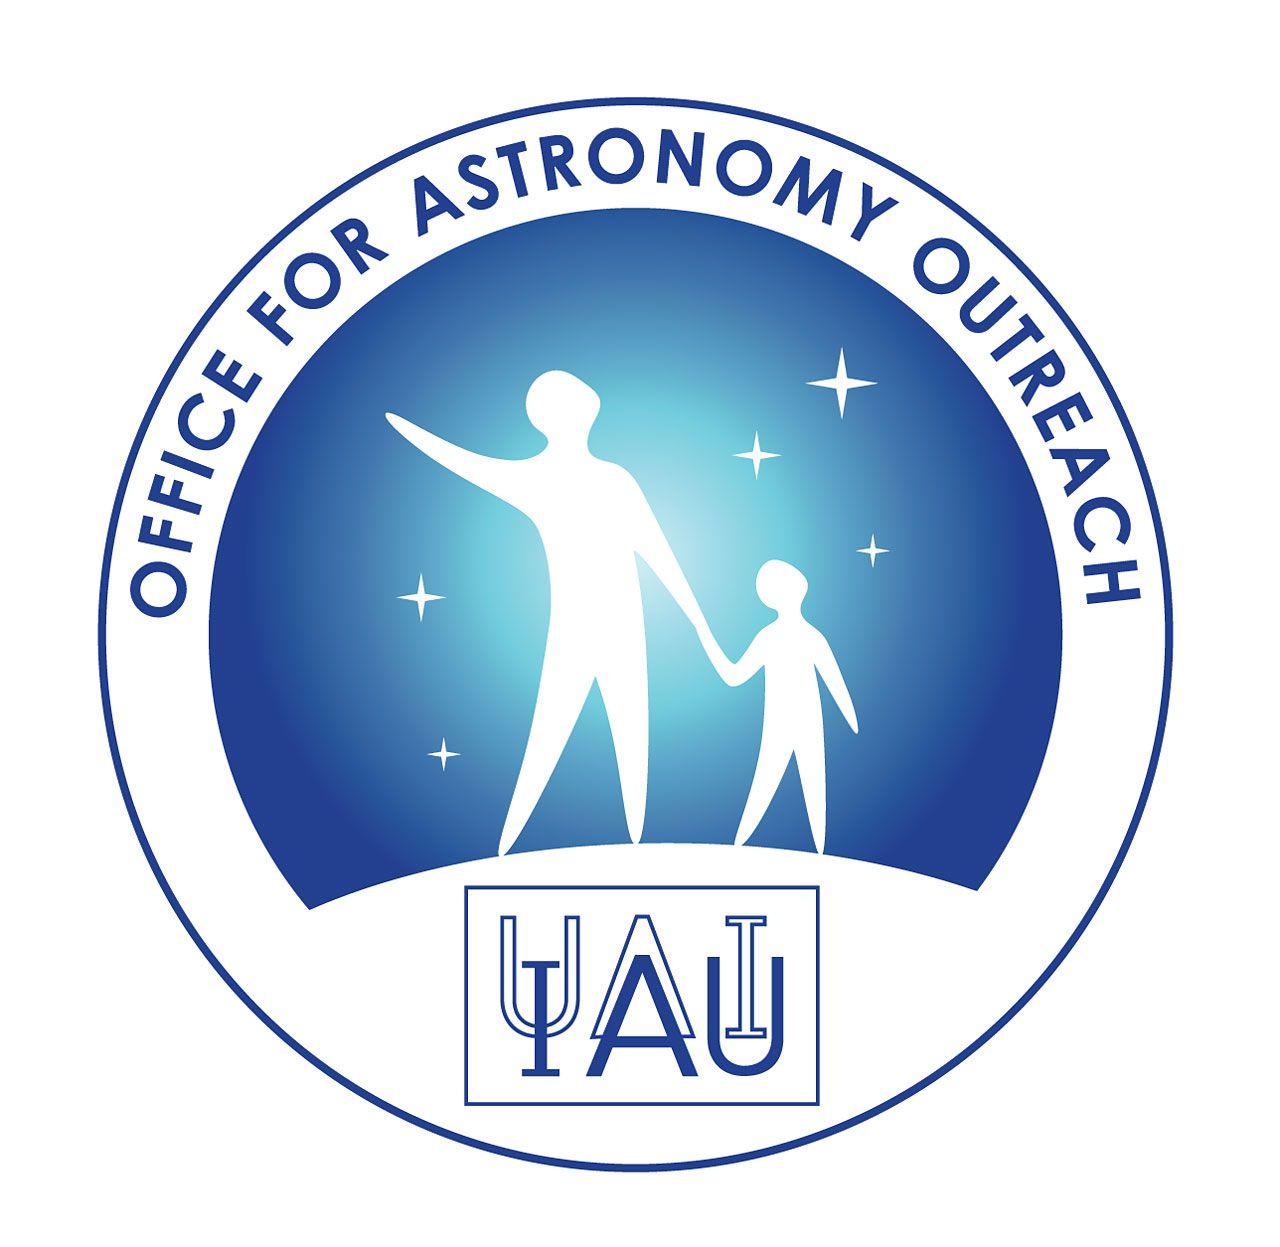 Iau Logo - IAU Office for Astronomy Outreach logo | IAU